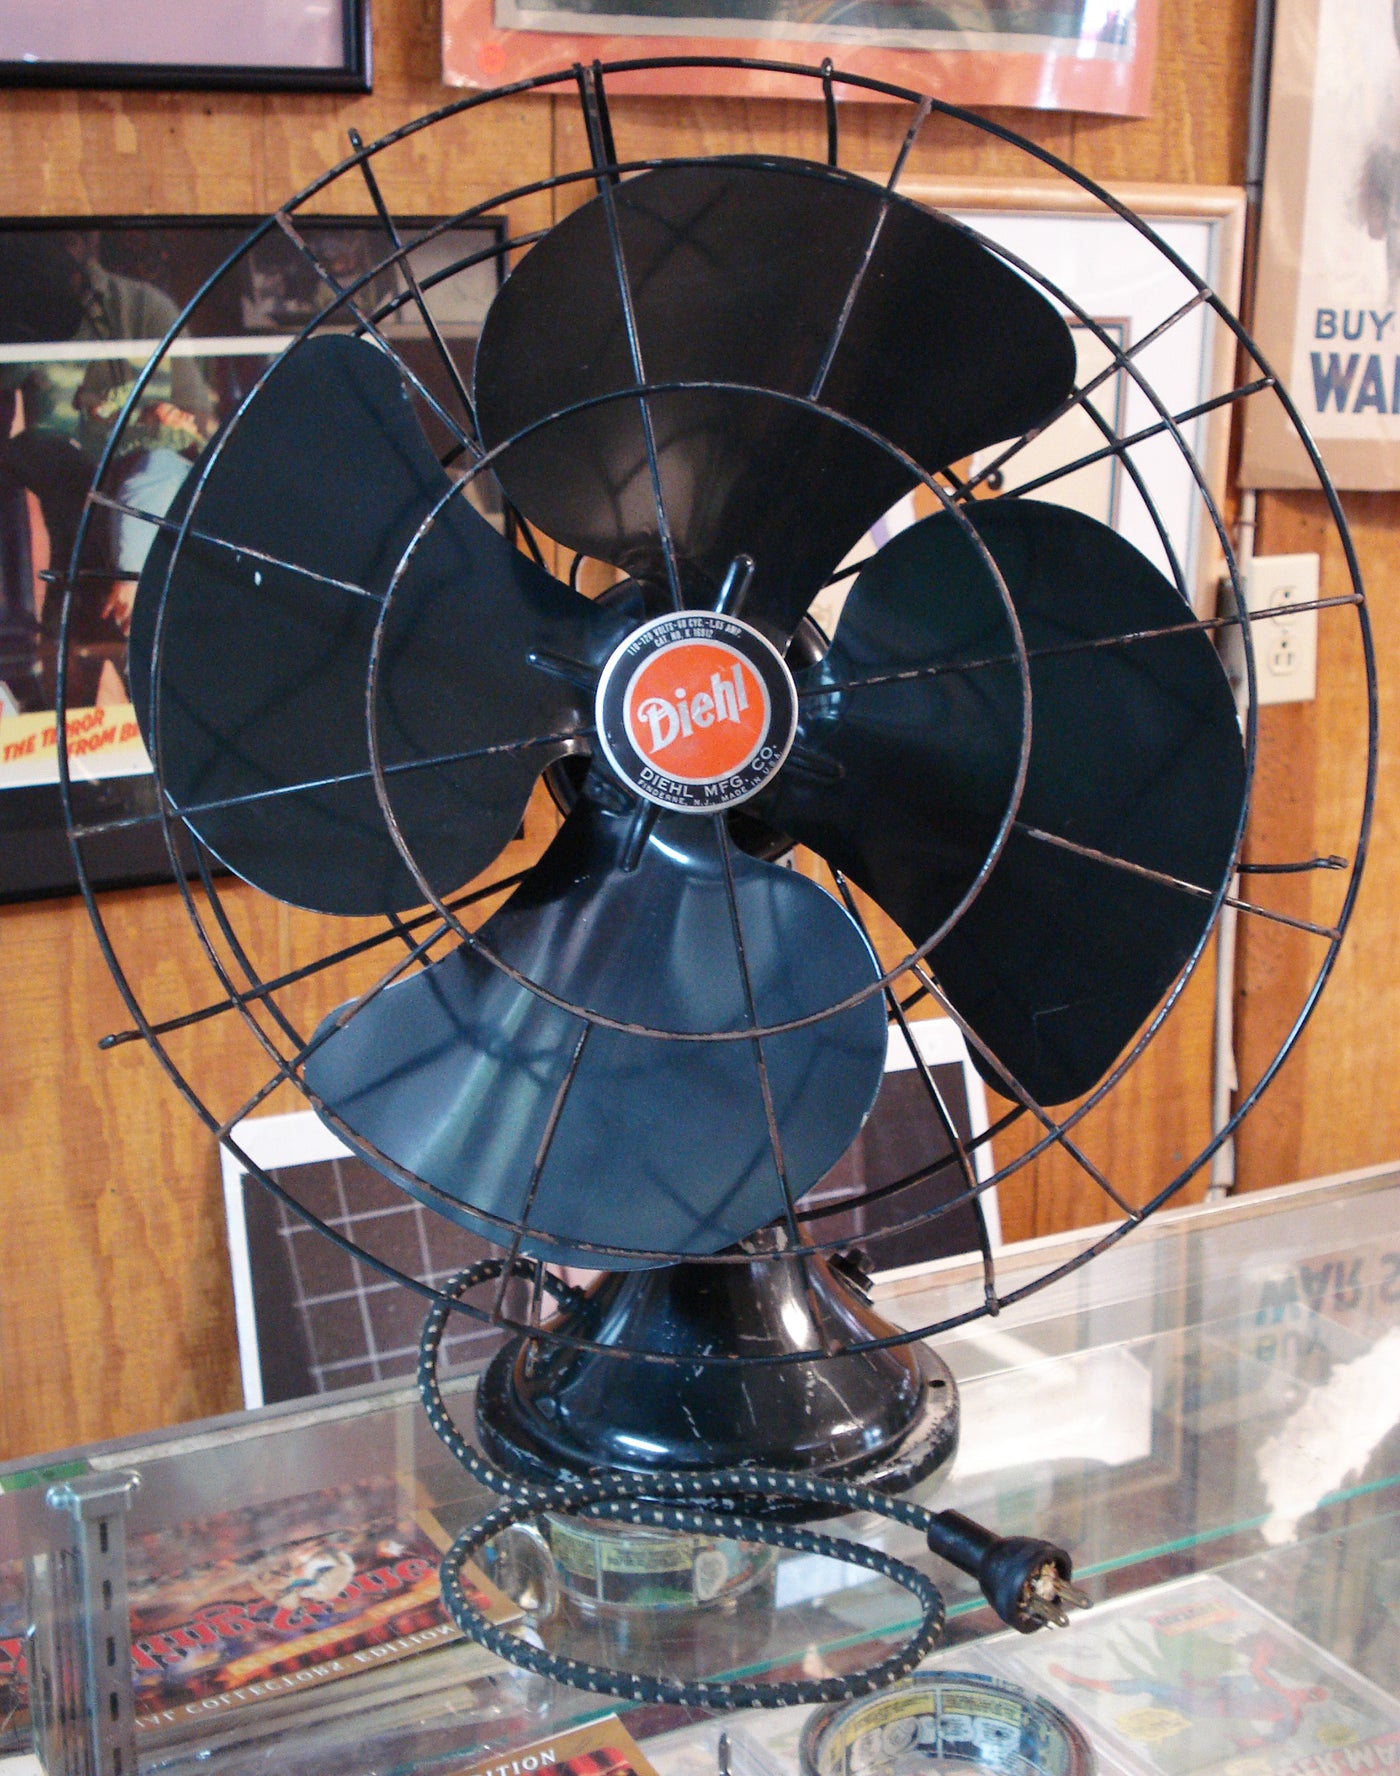 Diehl Electric Fan 1950s